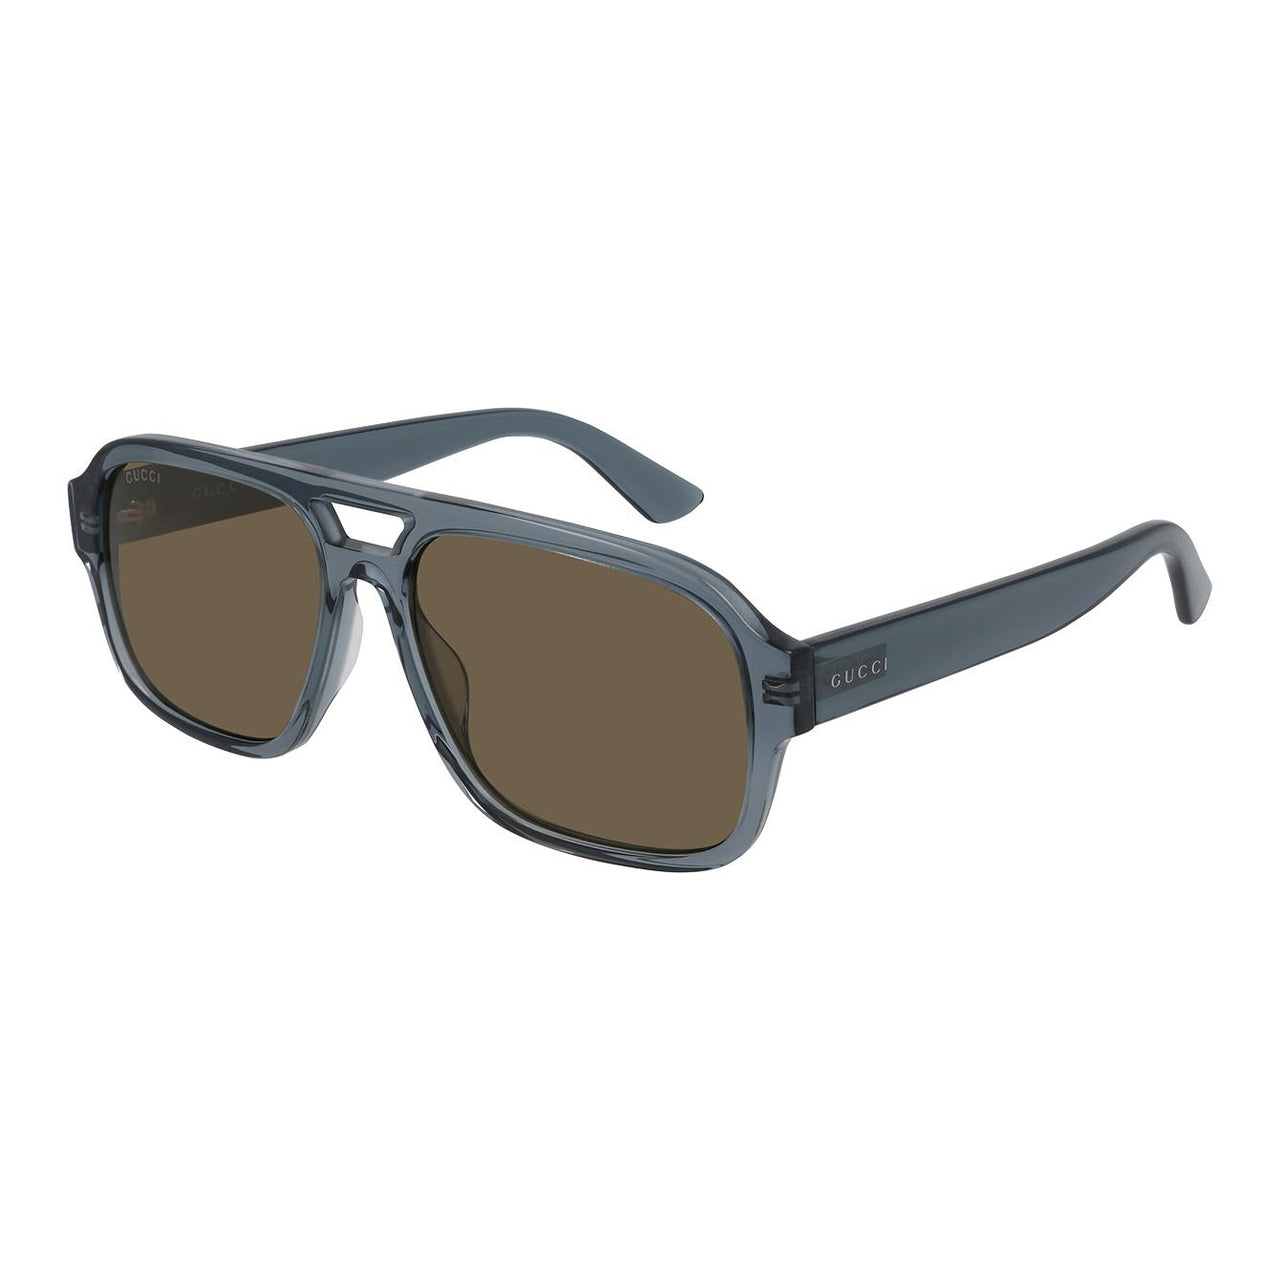 Gucci Men's Sunglasses Rectangular Pilot Blue GG0925S-004 58